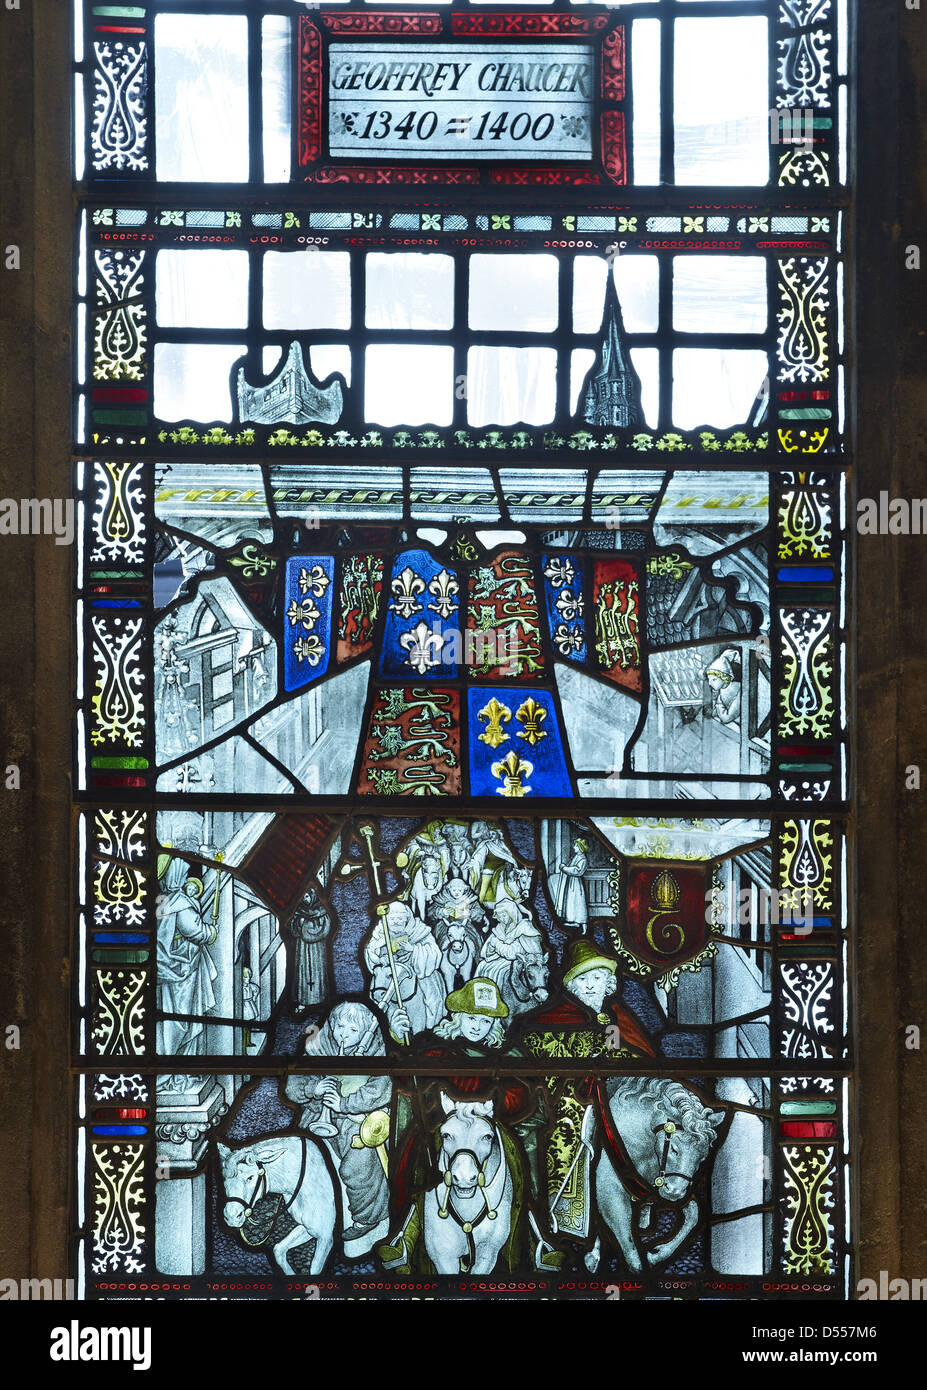 La cathédrale de Southwark fenêtre Chaucer Banque D'Images